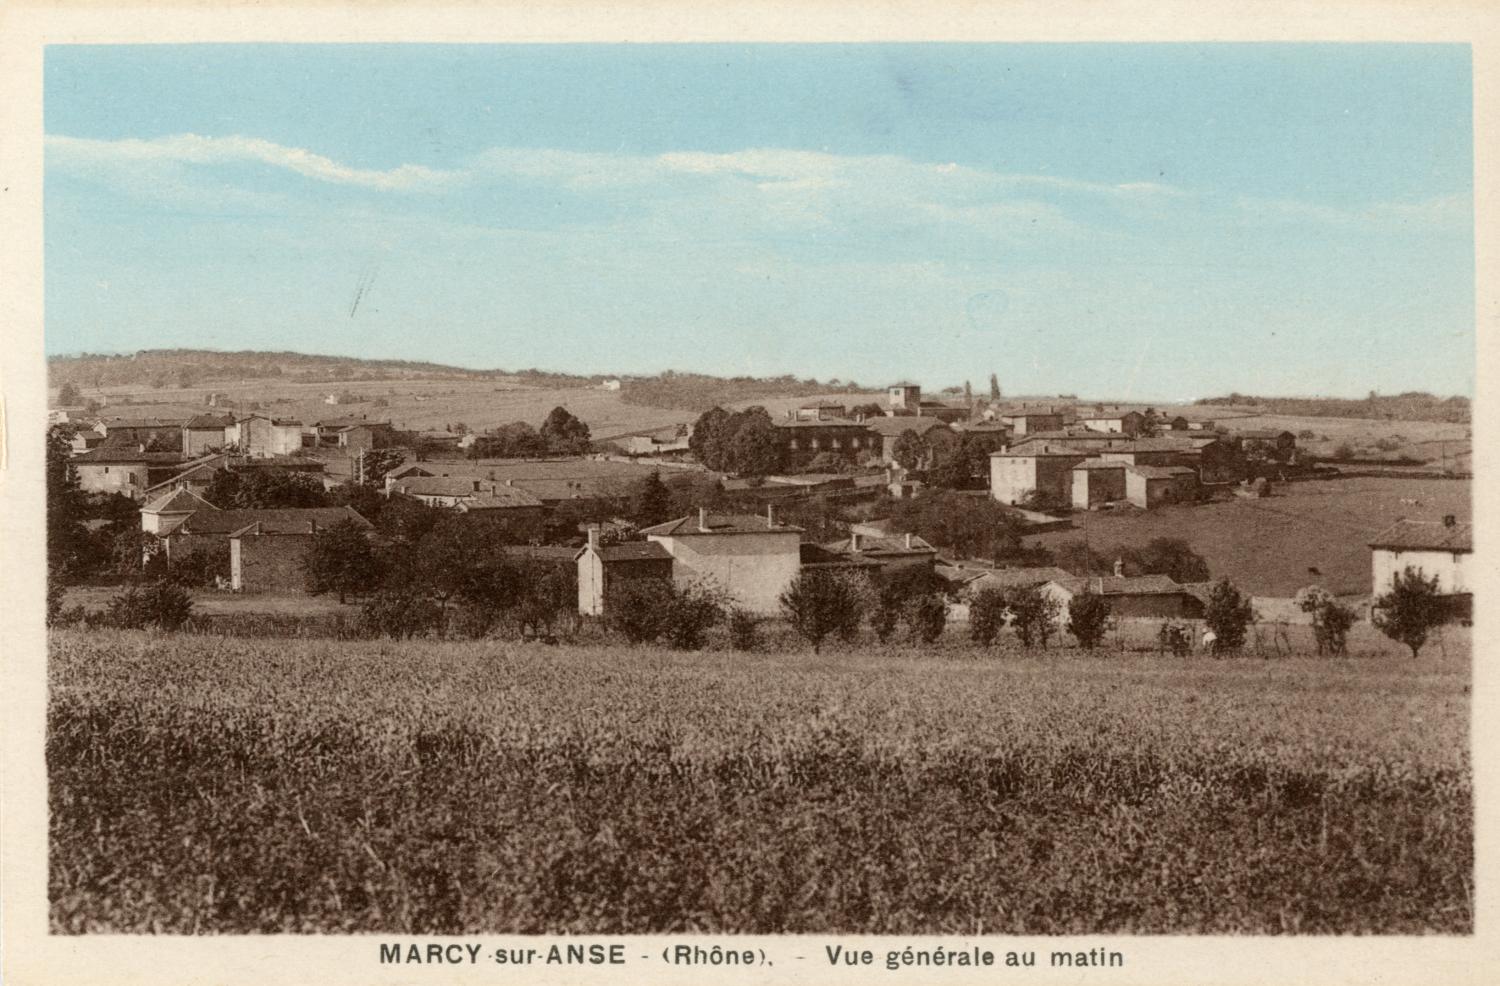 Marcy-sur-Anse (Rhône). - Vue générale au matin